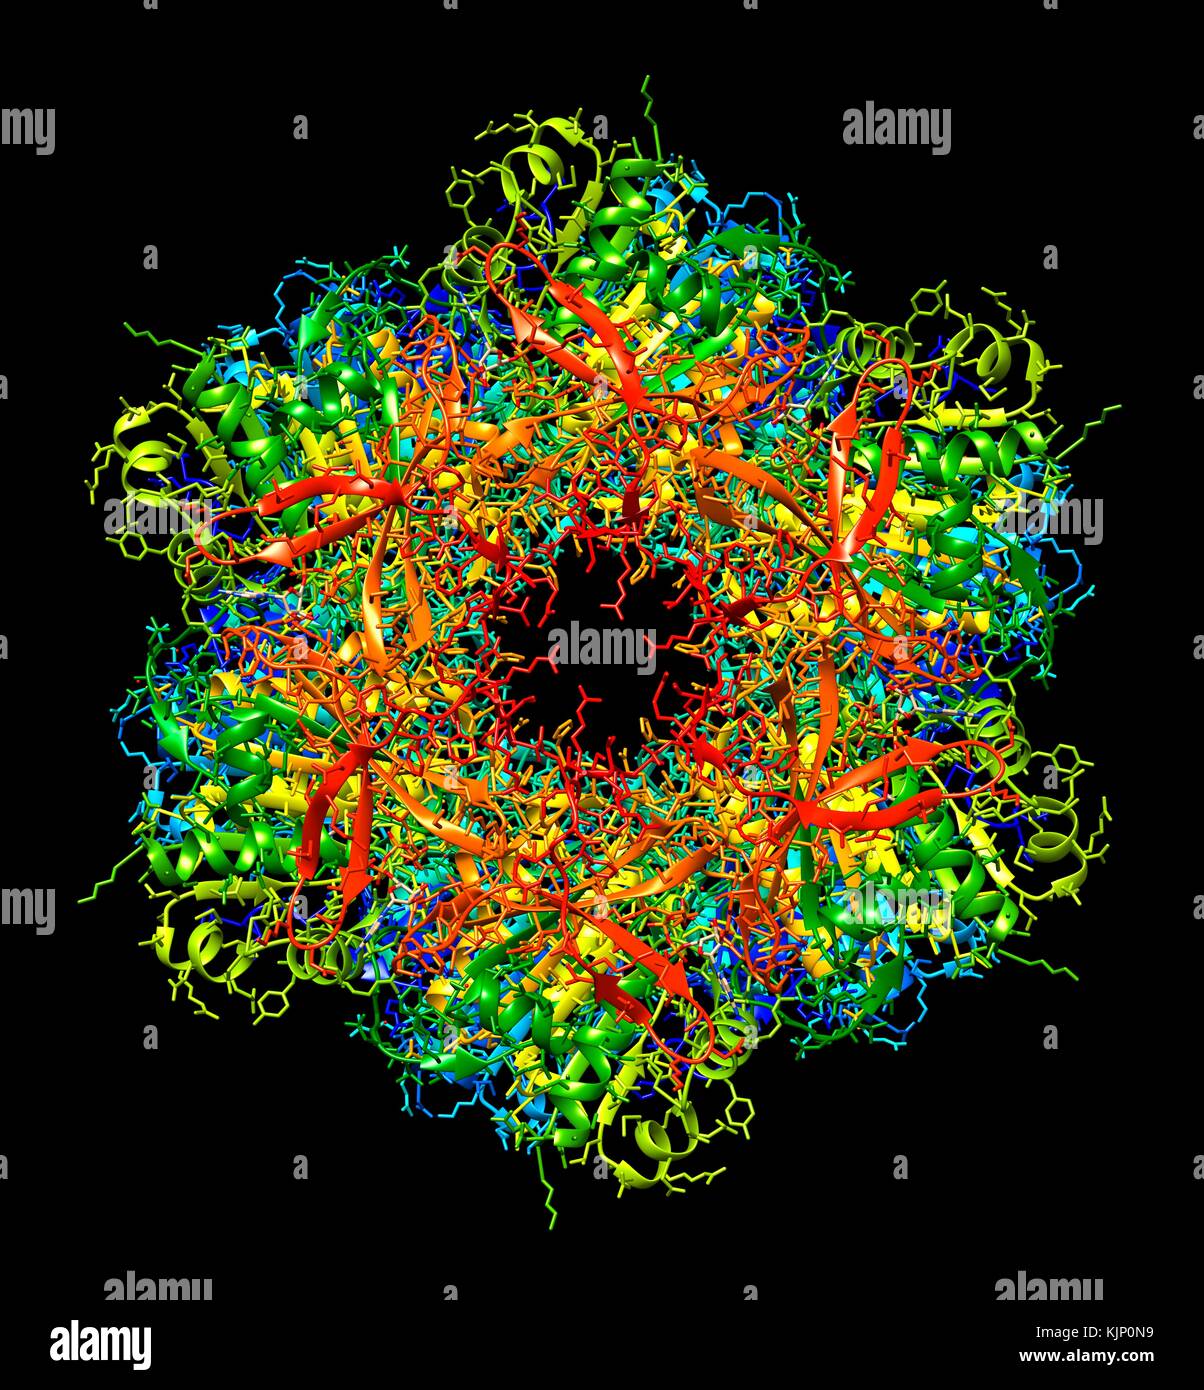 L'horloge circadienne bactérienne molécule protéique. Modèle d'ordinateur montrant la structure moléculaire de la protéine KaiC trouvés dans les cyanobactéries (algues bleu-vert). KaiC est une protéine exprimée par le gène kaiC et est l'un des trois de ces protéines qui sont essentielles pour les rythmes circadiens dans ces bactéries. Les rythmes circadiens sont 'biologique' horloges avec une période proche de 24 heures qui aident à régulariser le sommeil et l'alimentation chez les animaux. Chez les bactéries, ils sont pensés pour aider à réguler la division cellulaire. Banque D'Images